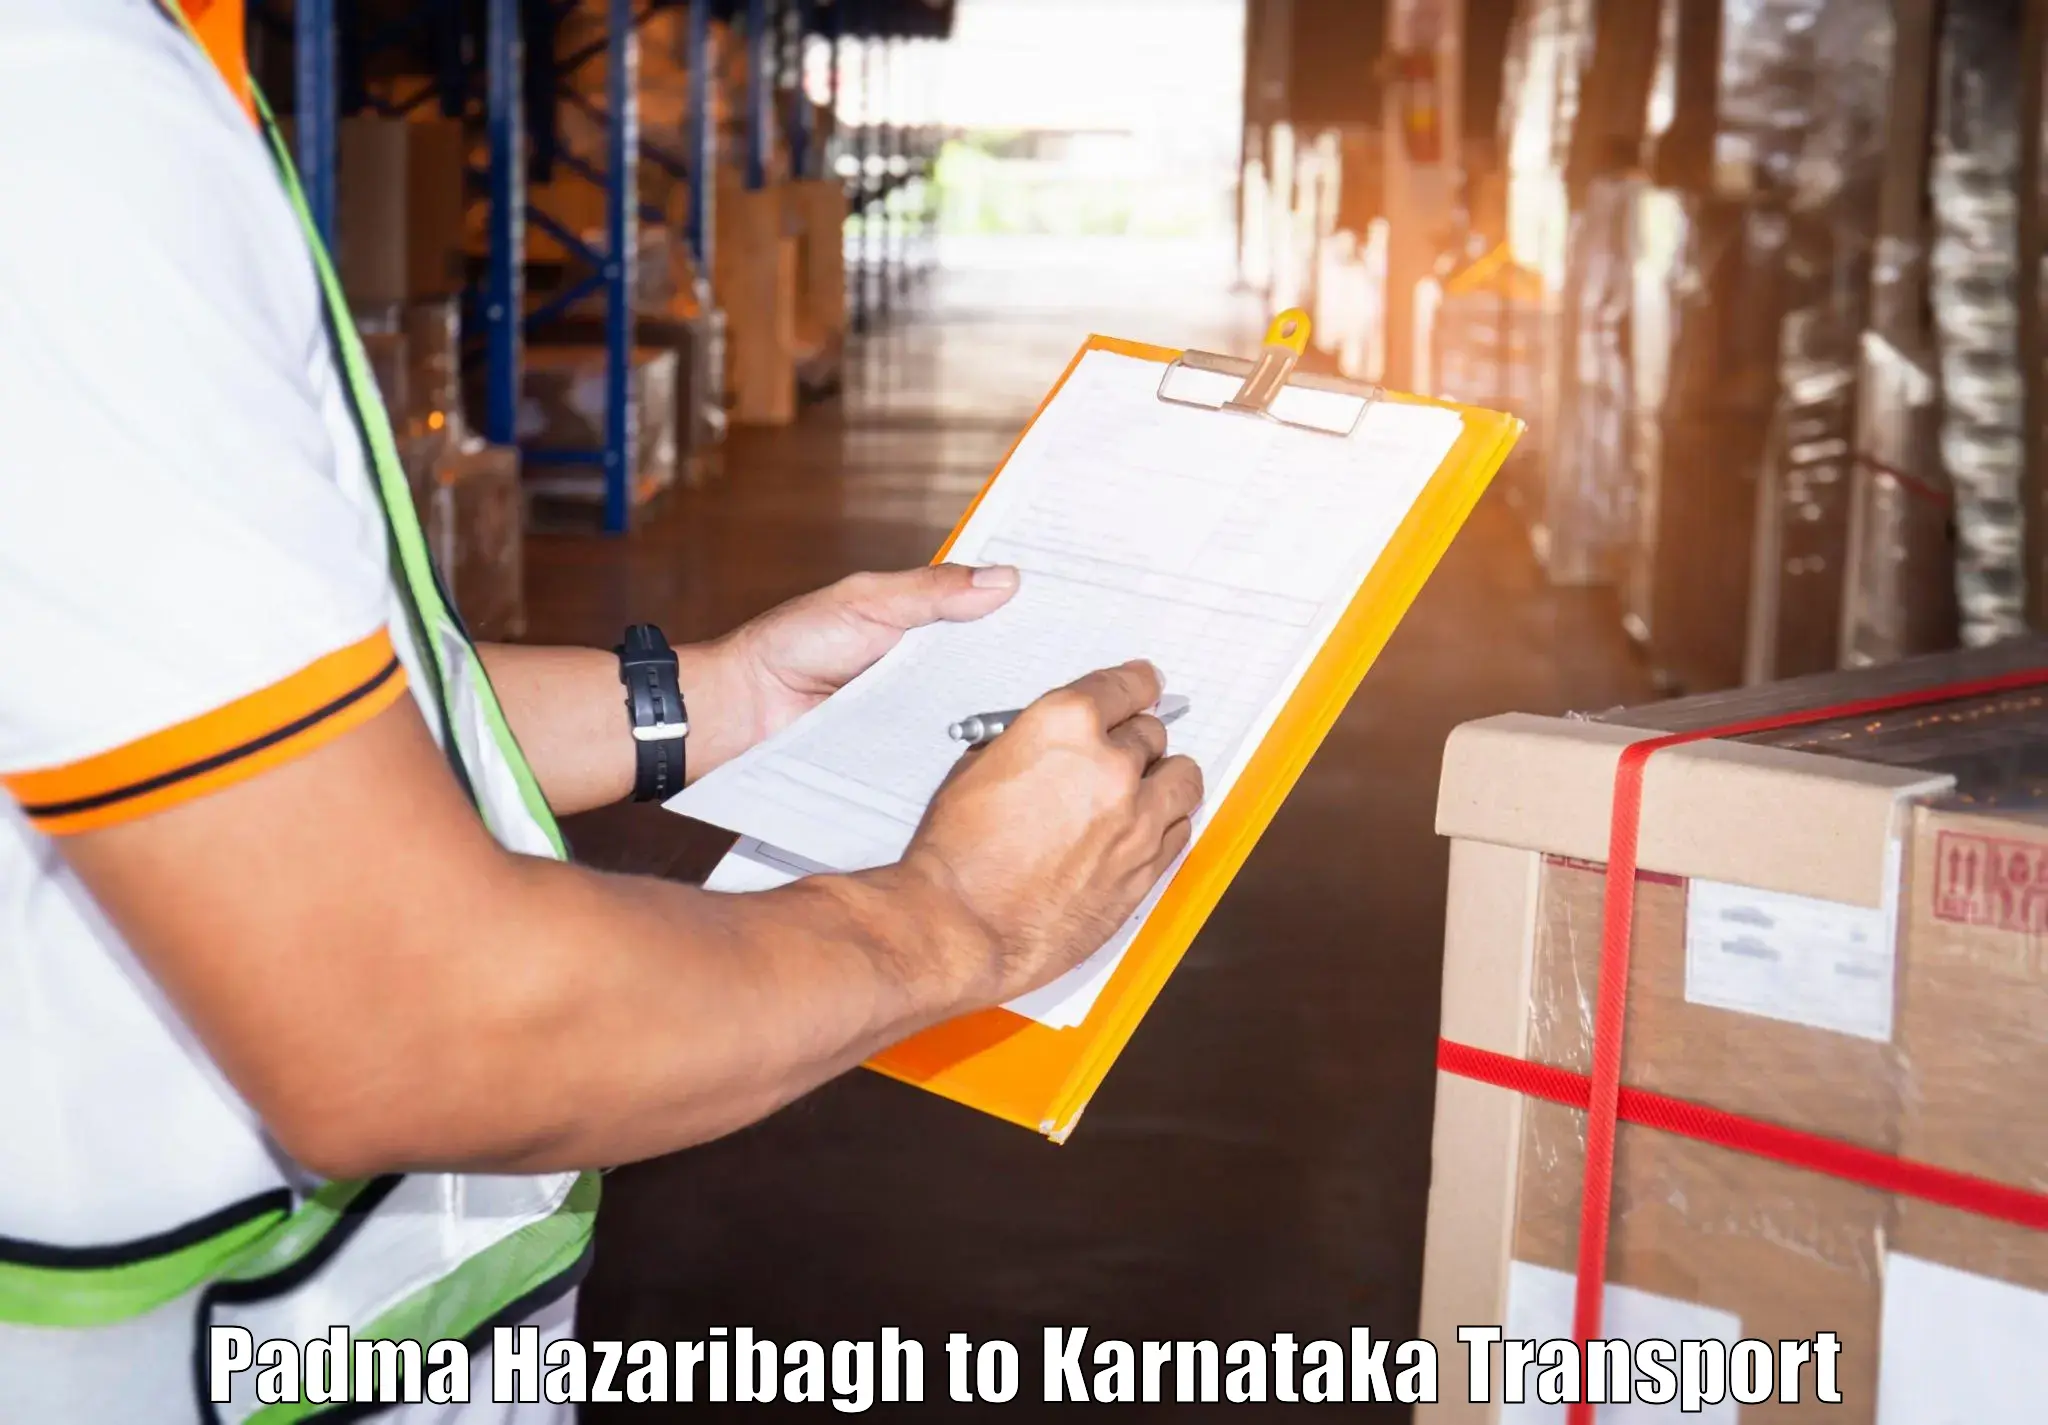 Shipping partner Padma Hazaribagh to Doddaballapura